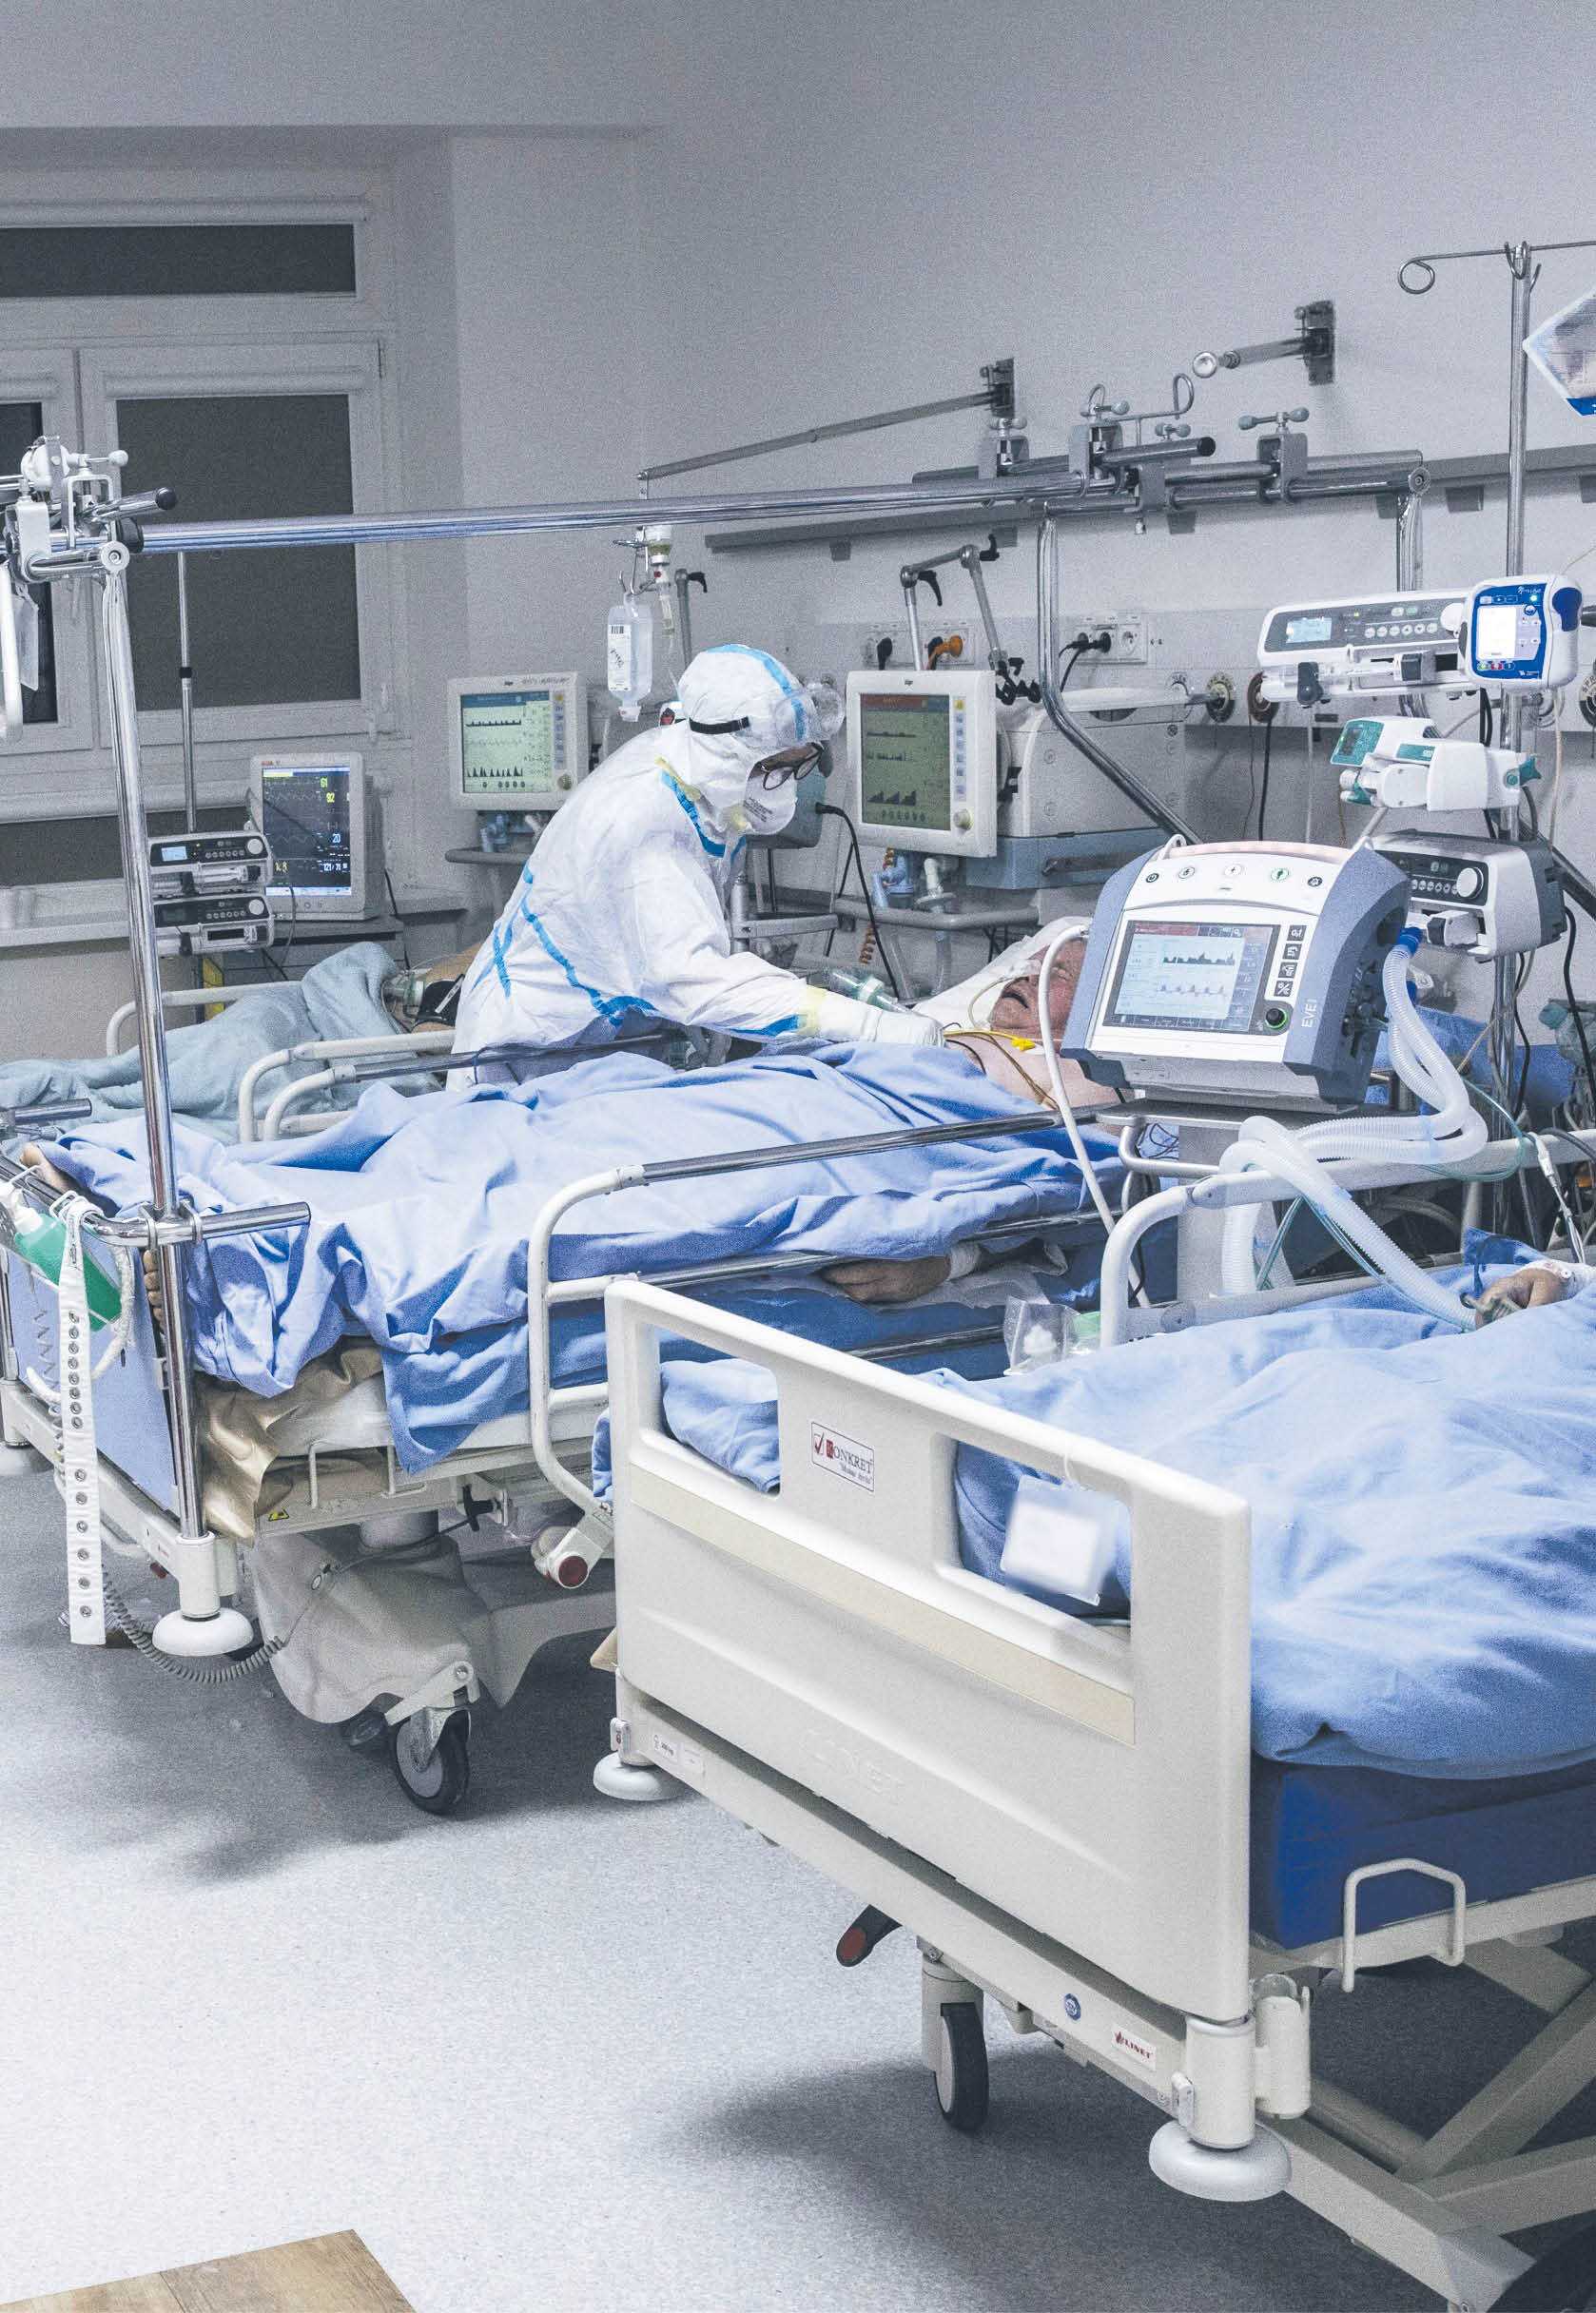 Ograniczenie odwiedzin, stroje ochronne - szpitale wracają do znanych metod walki z koronawirusem